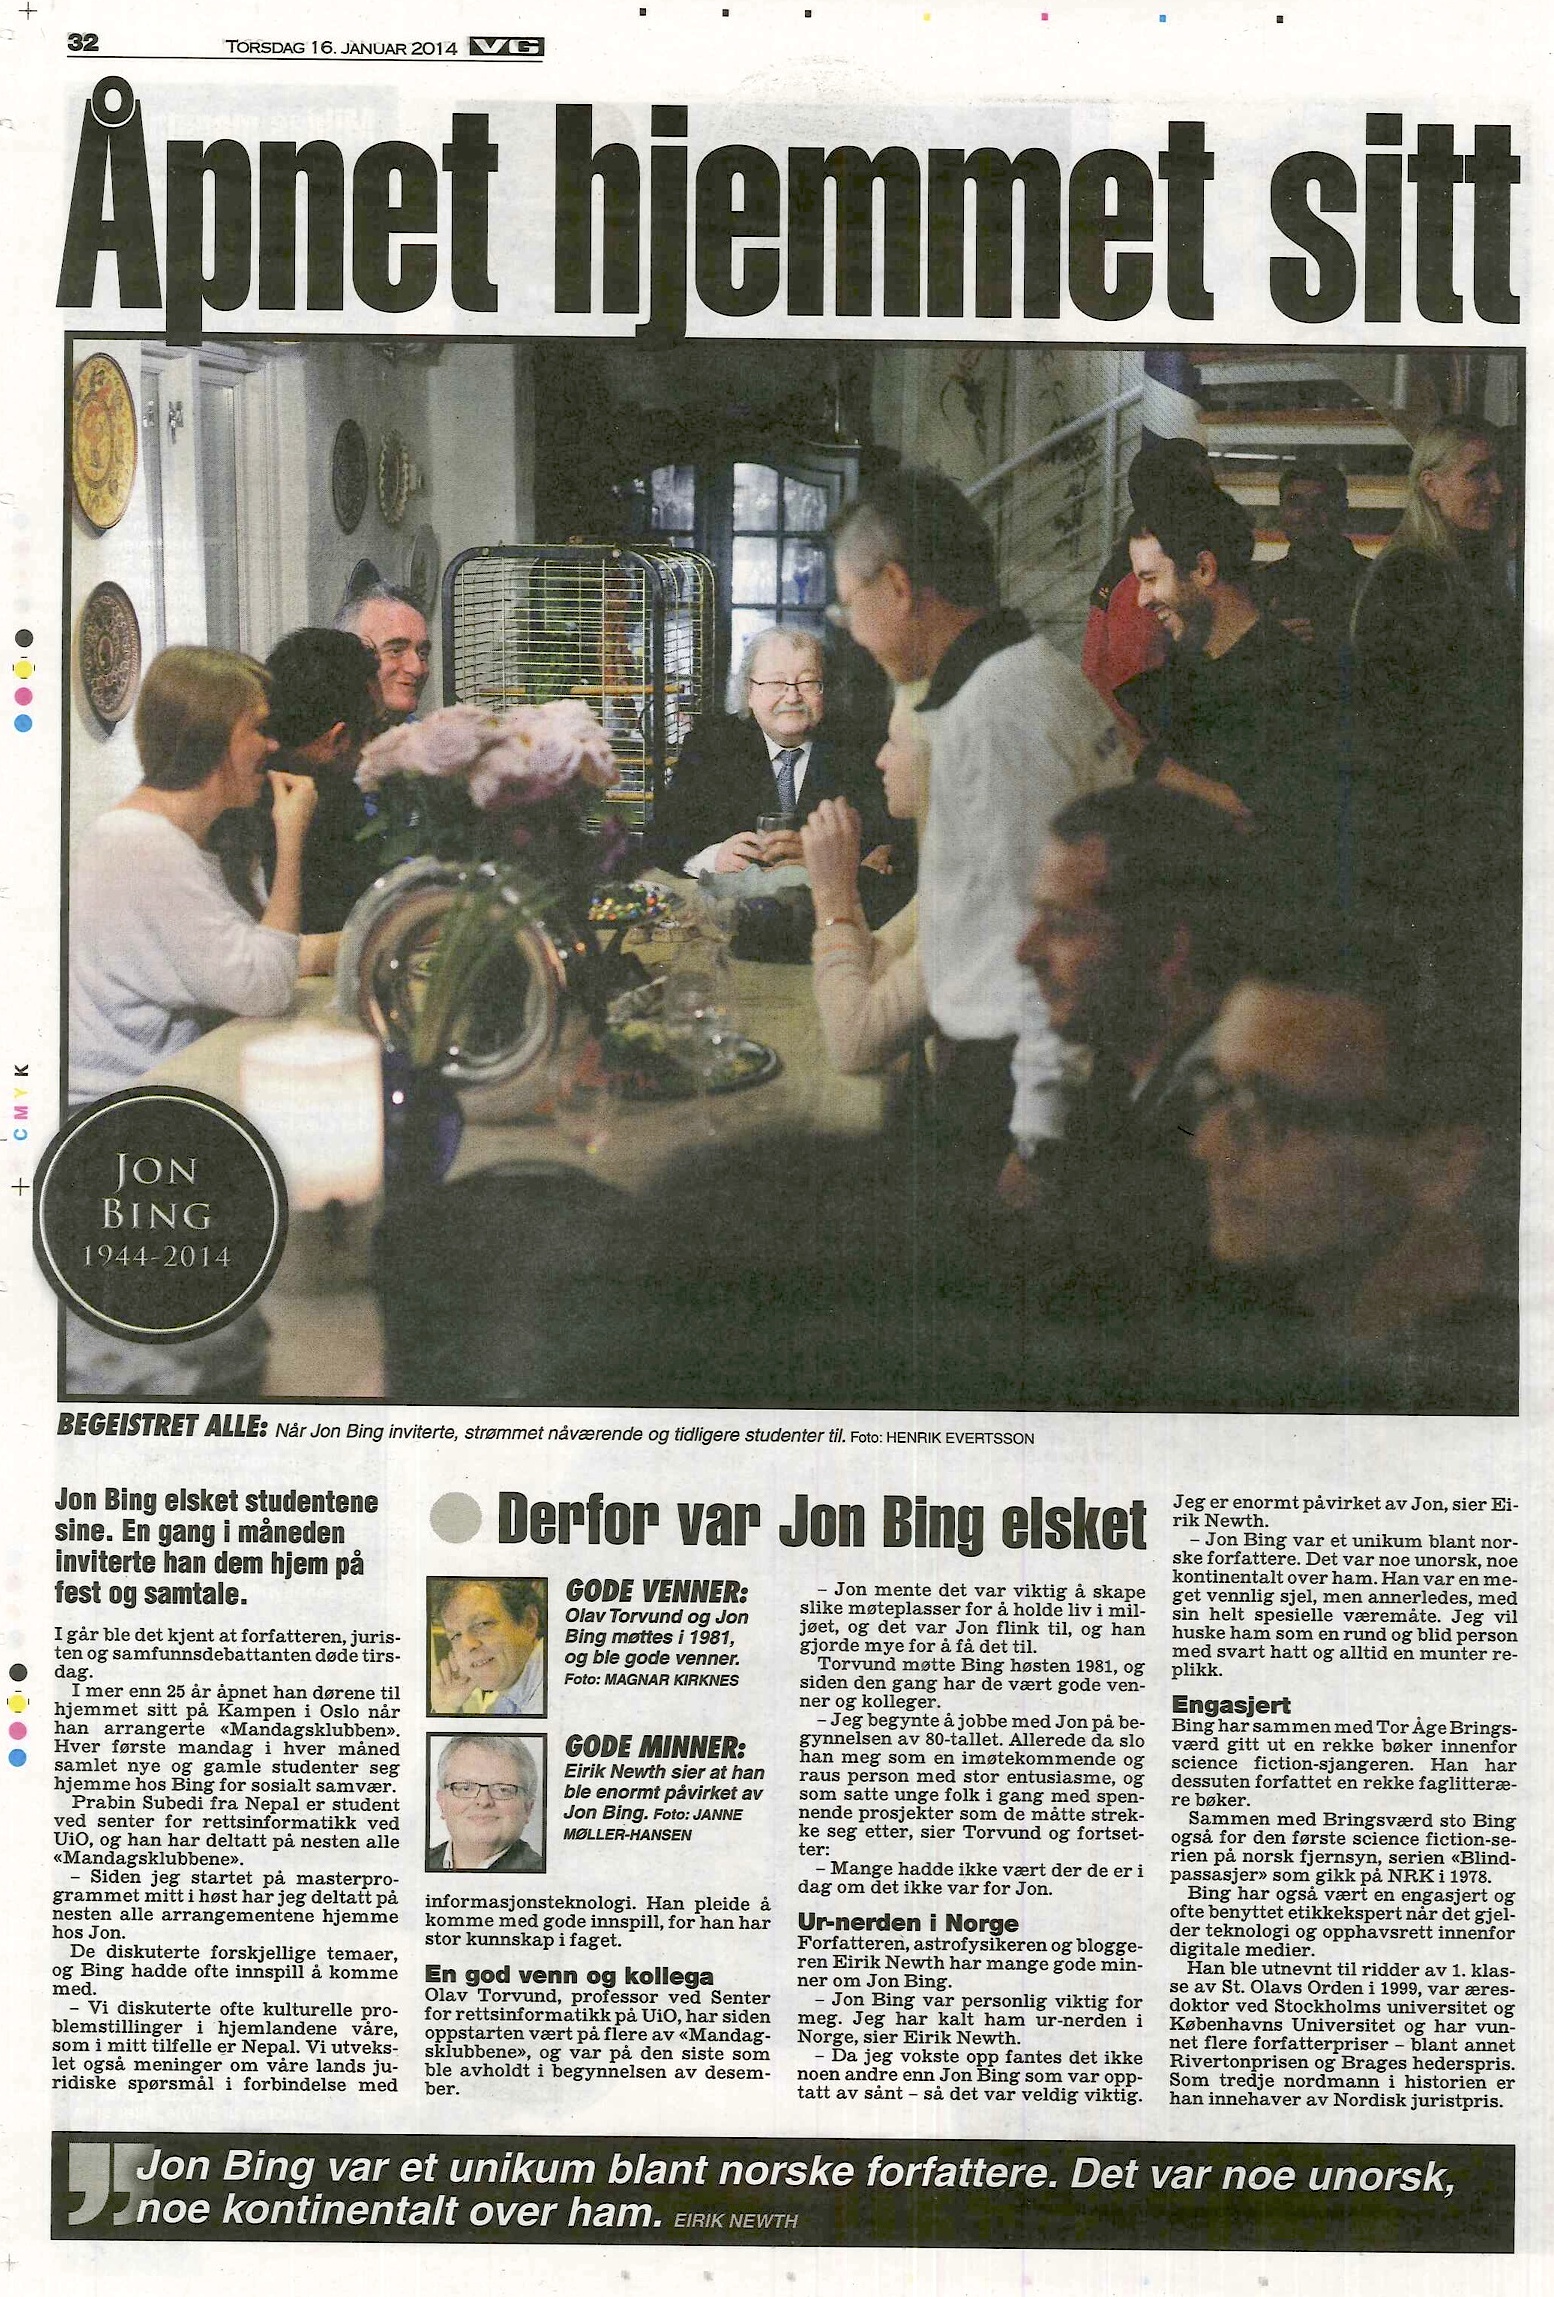 Matéria do jornal norueguês VG sobre a morte de Jon Bing. Tive a honra de estar em uma das várias ocasiões em que abriu sua residência para seus alunos e amigos.